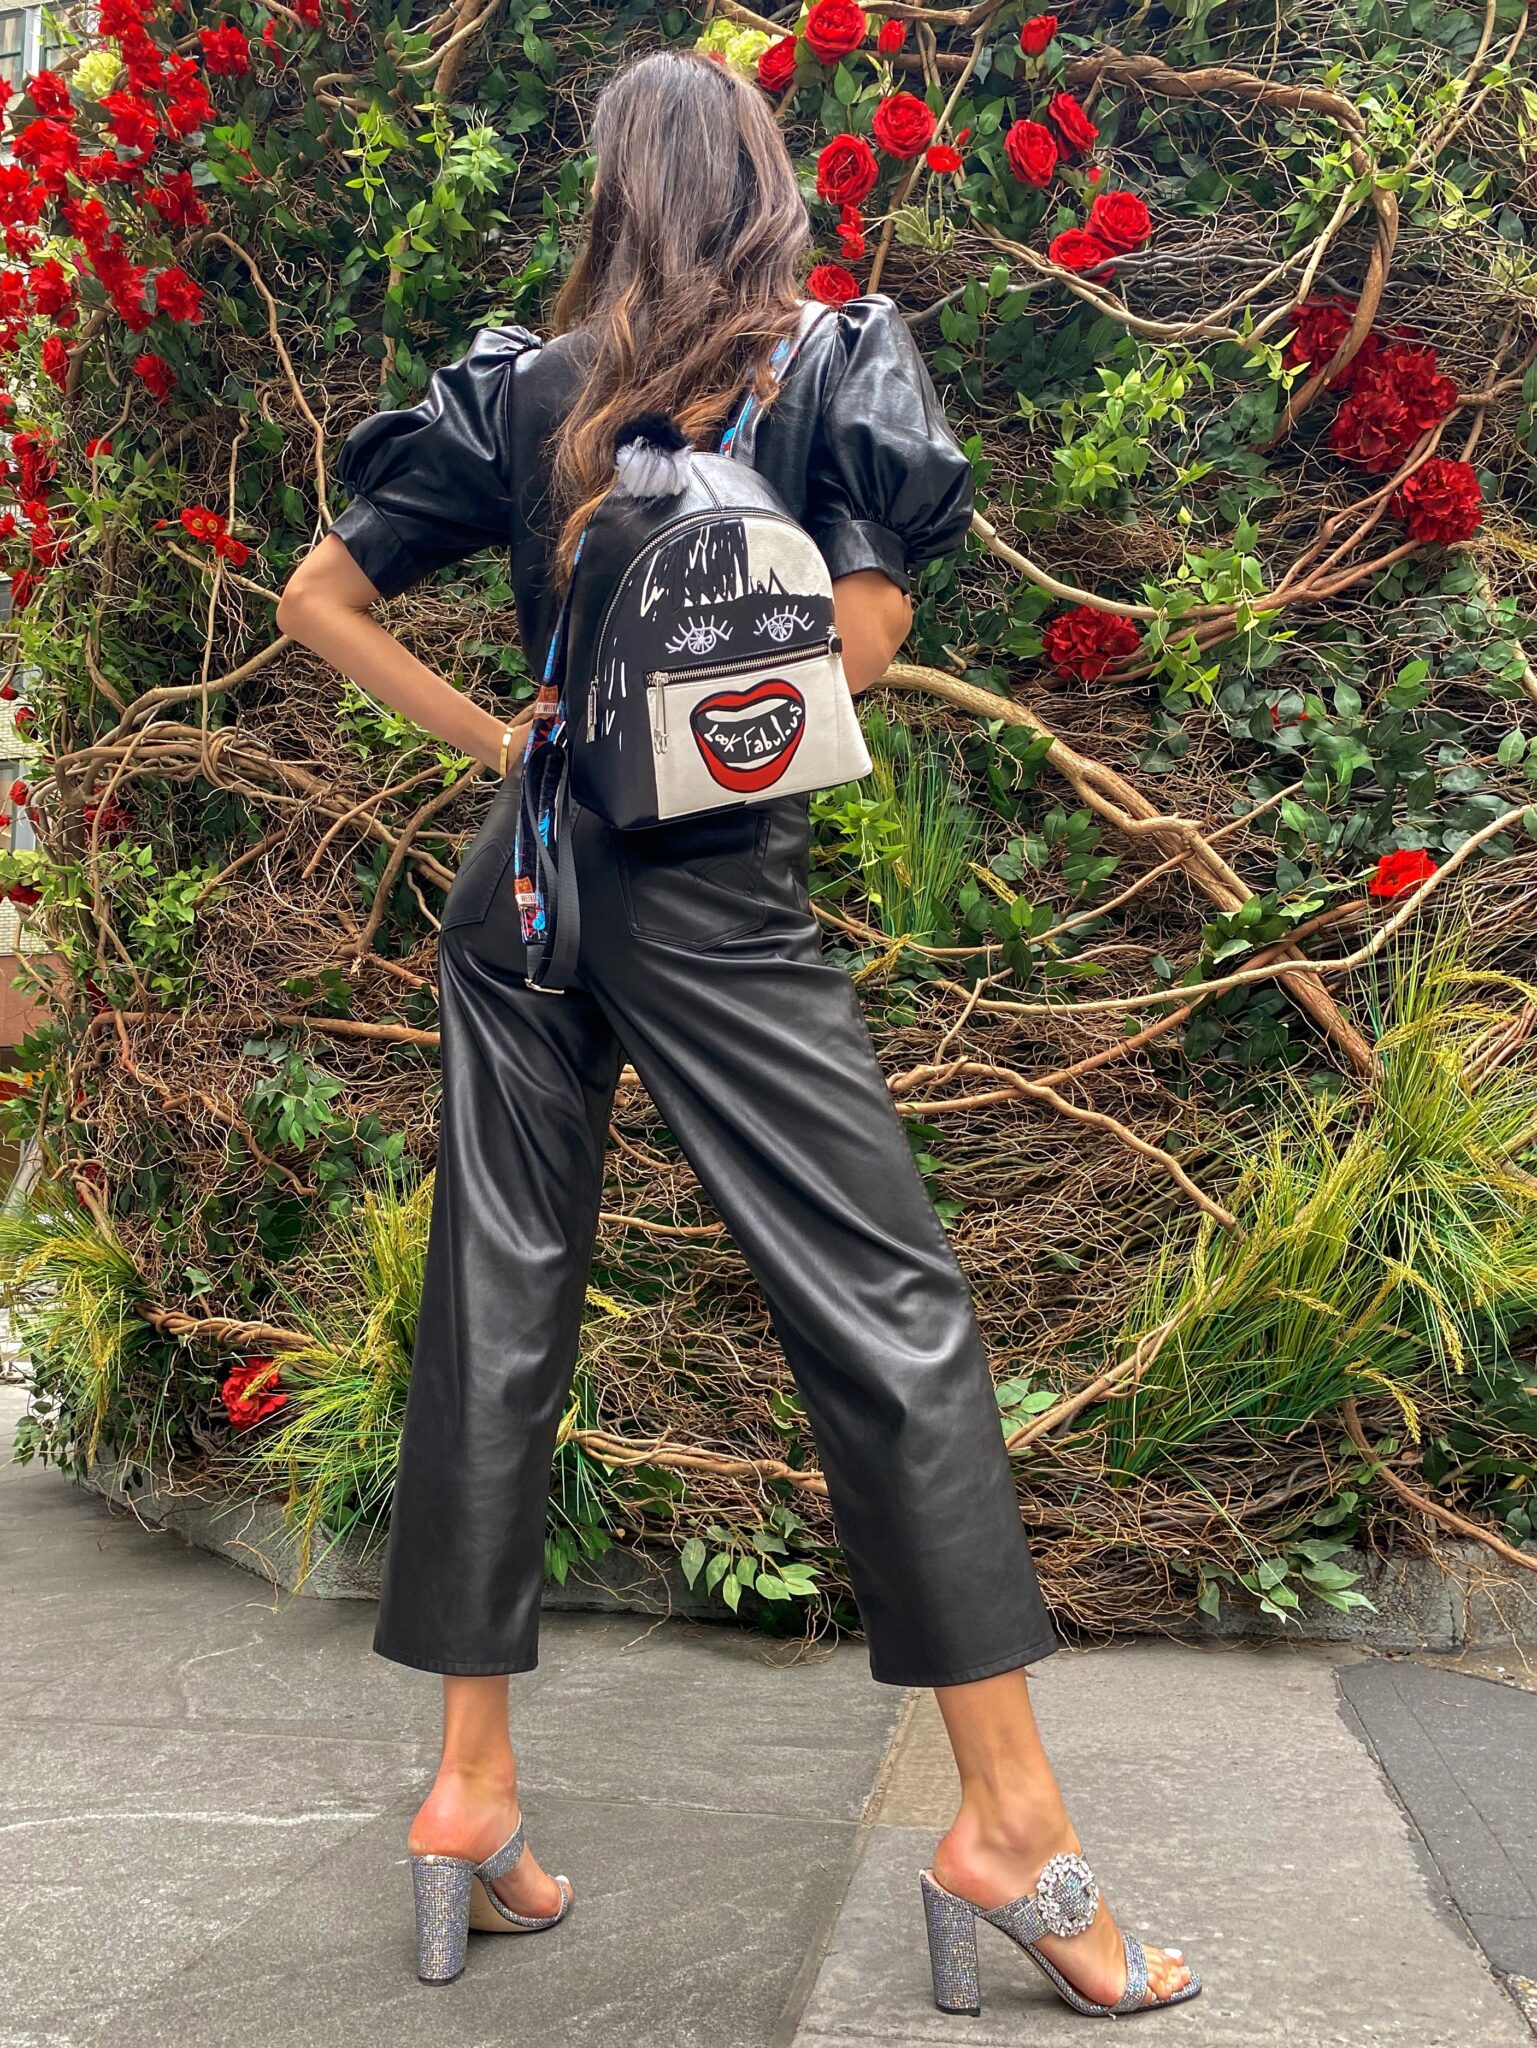 New Danielle Nicole Cruella Bags Are A Must Have! | Chip and Company